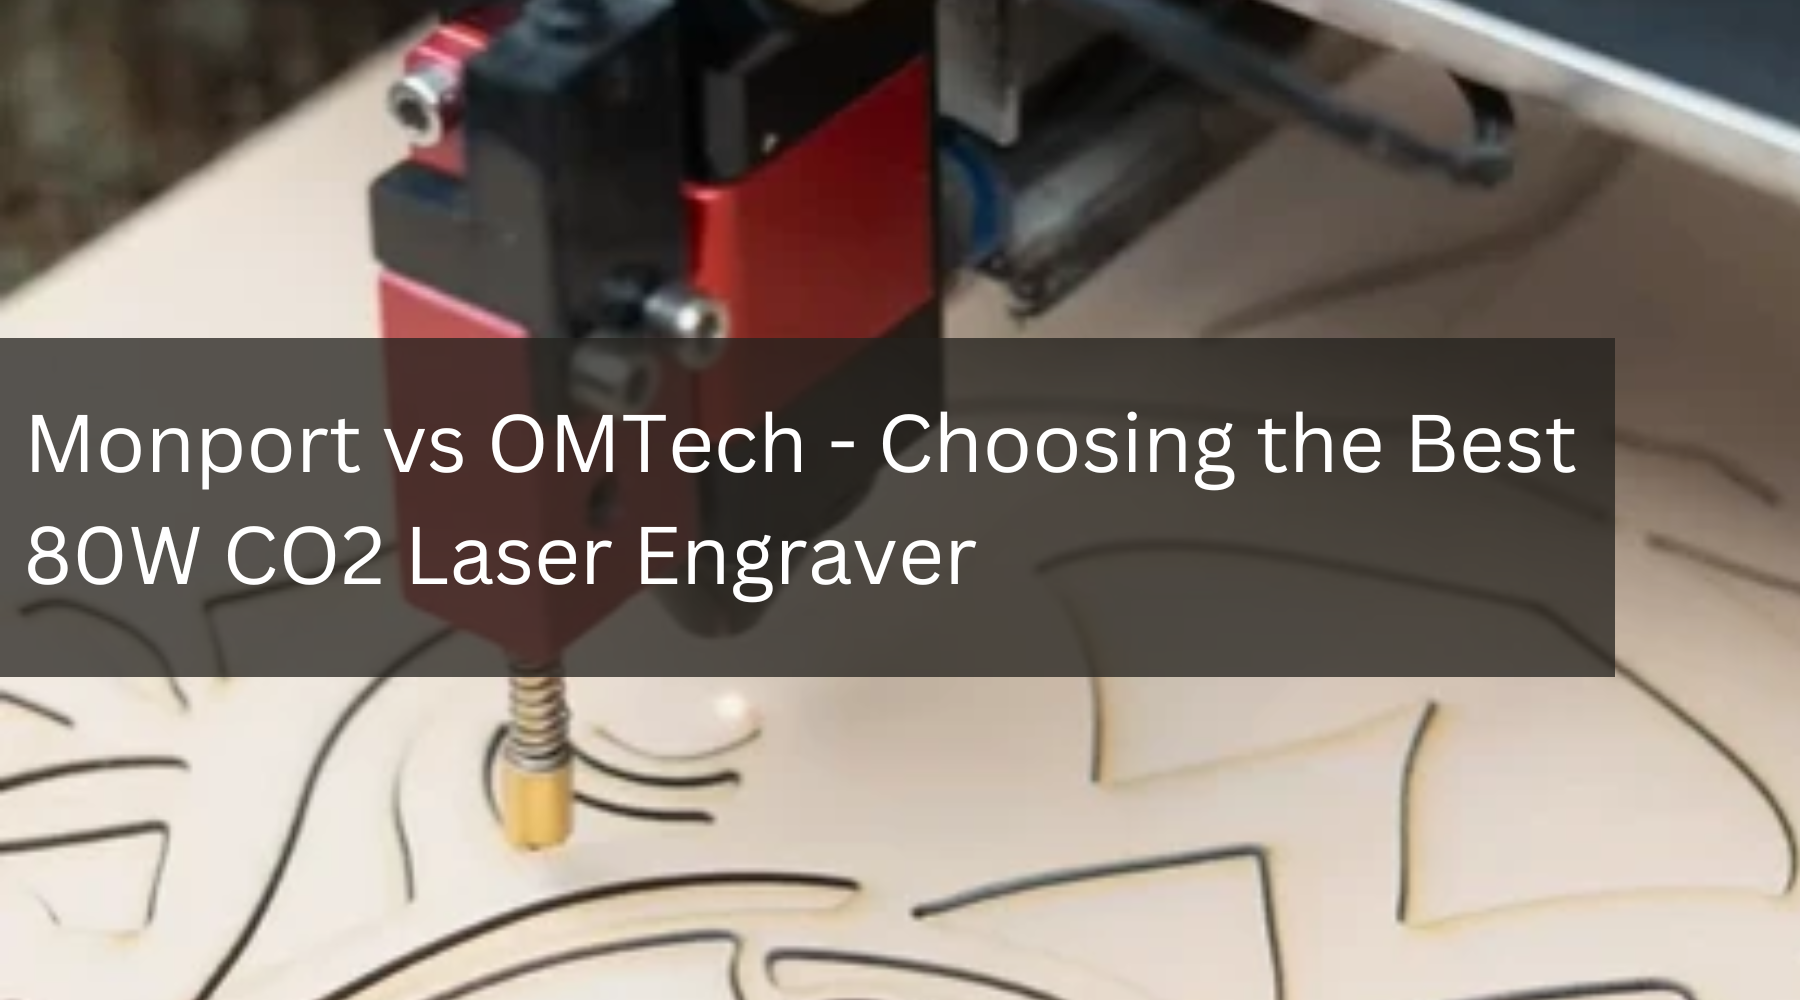 Monport vs OMTech - Choosing the Best 80W CO2 Laser Engraver